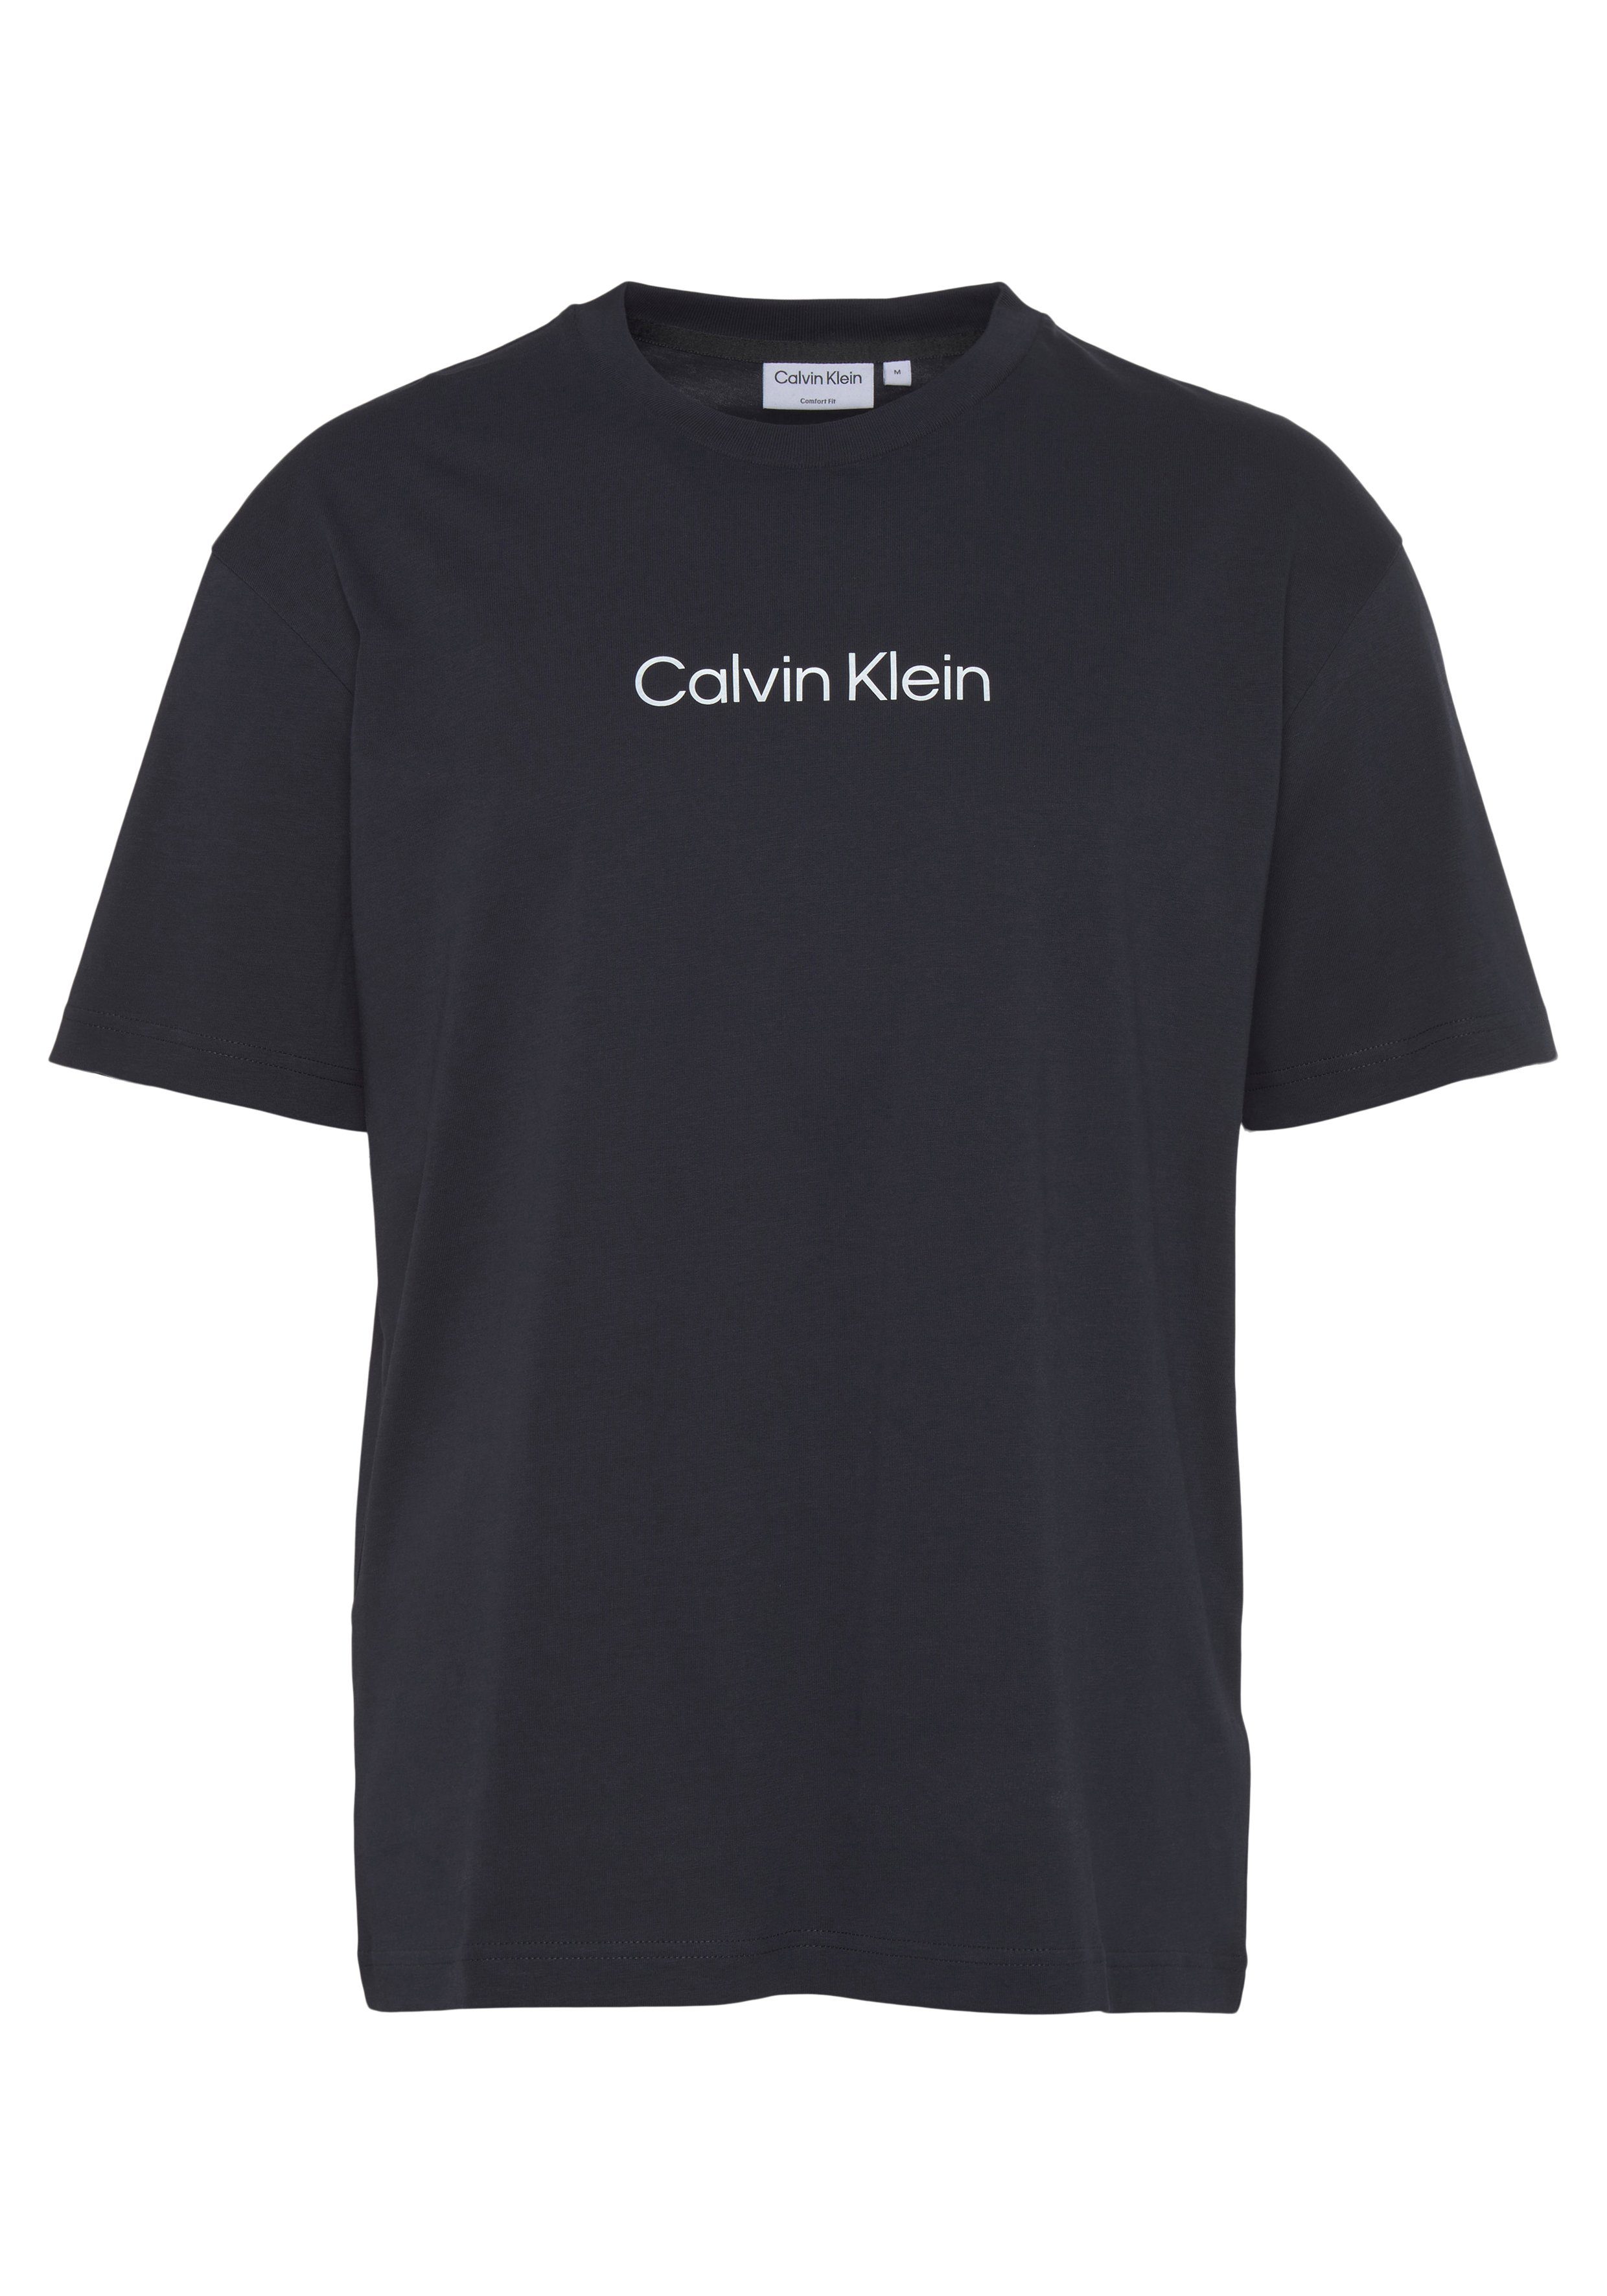 Calvin Klein T-Shirt Night Sky aufgedrucktem HERO T-SHIRT Markenlabel mit LOGO COMFORT